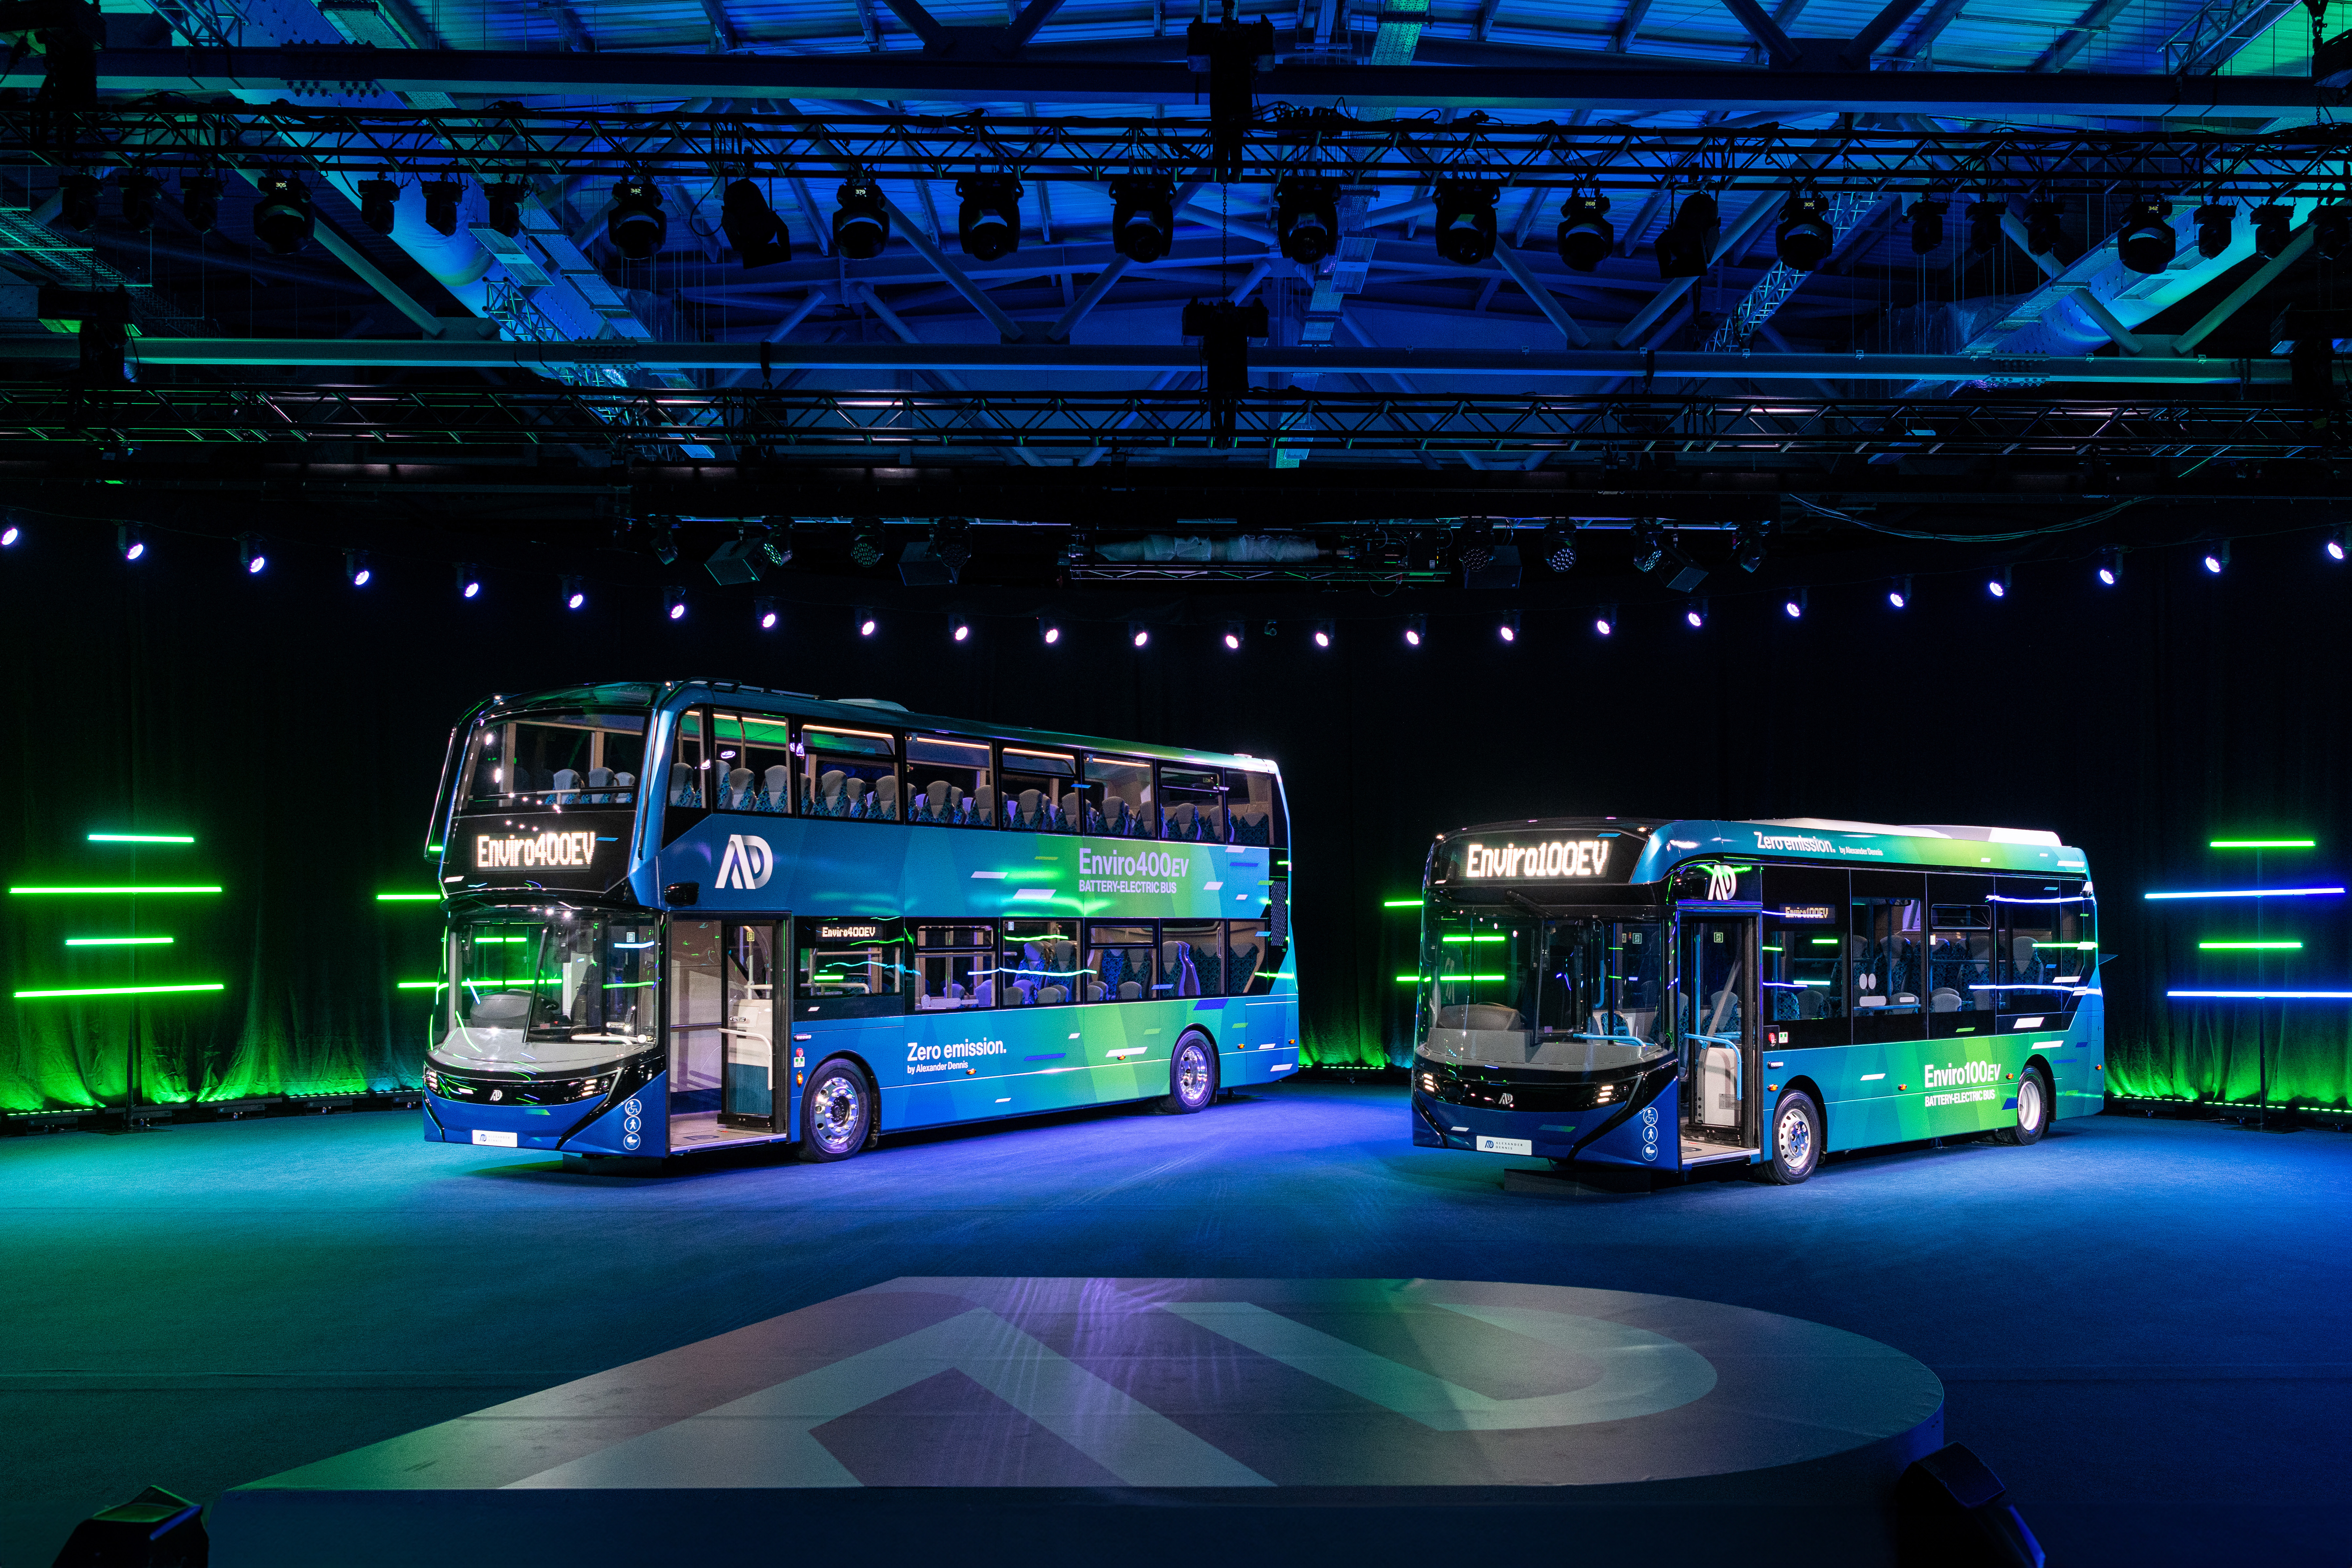 Next generation e-bus range by Alexander Dennis: Enviro100EV and 400EV  unveiled